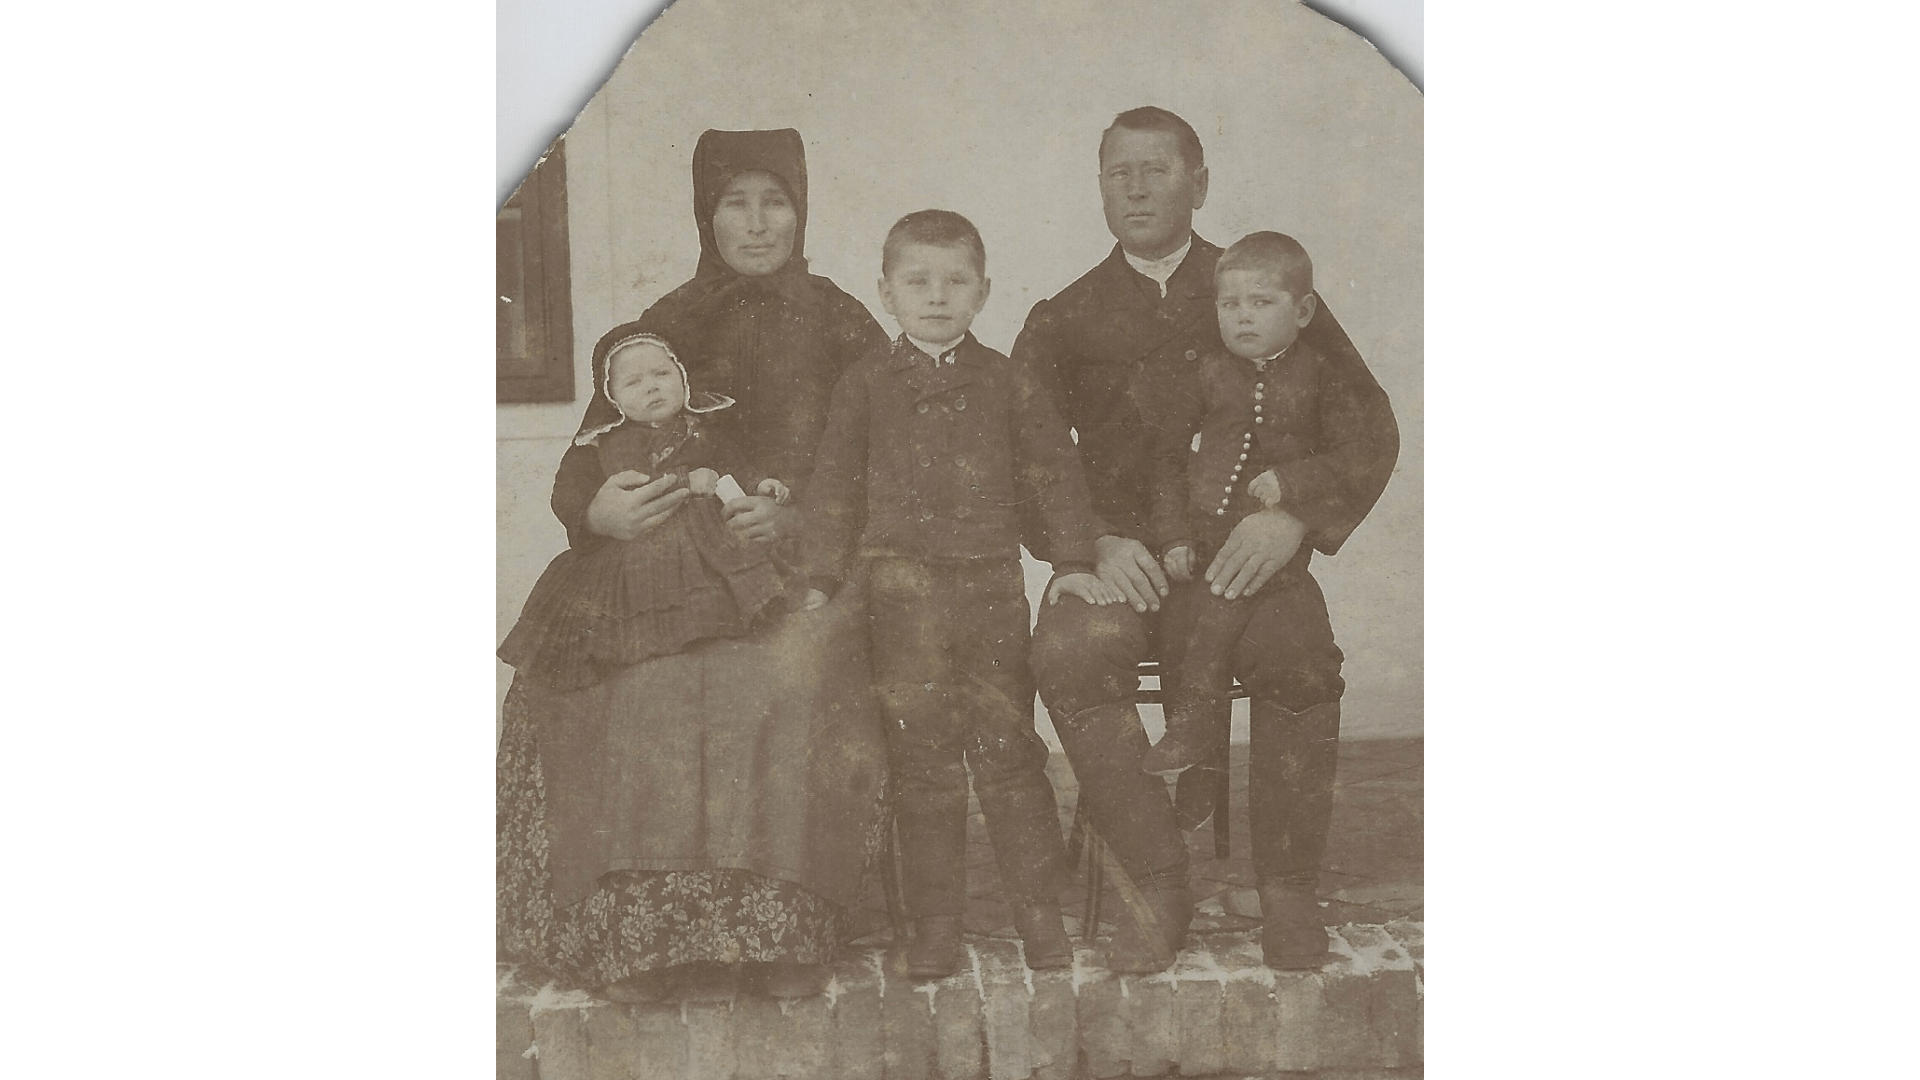 Familie Pertschi (Lippl) um 1899. Der Vater von Josef Pertschi, mittig. Foto: Archiv Freundeskreis Filipowa